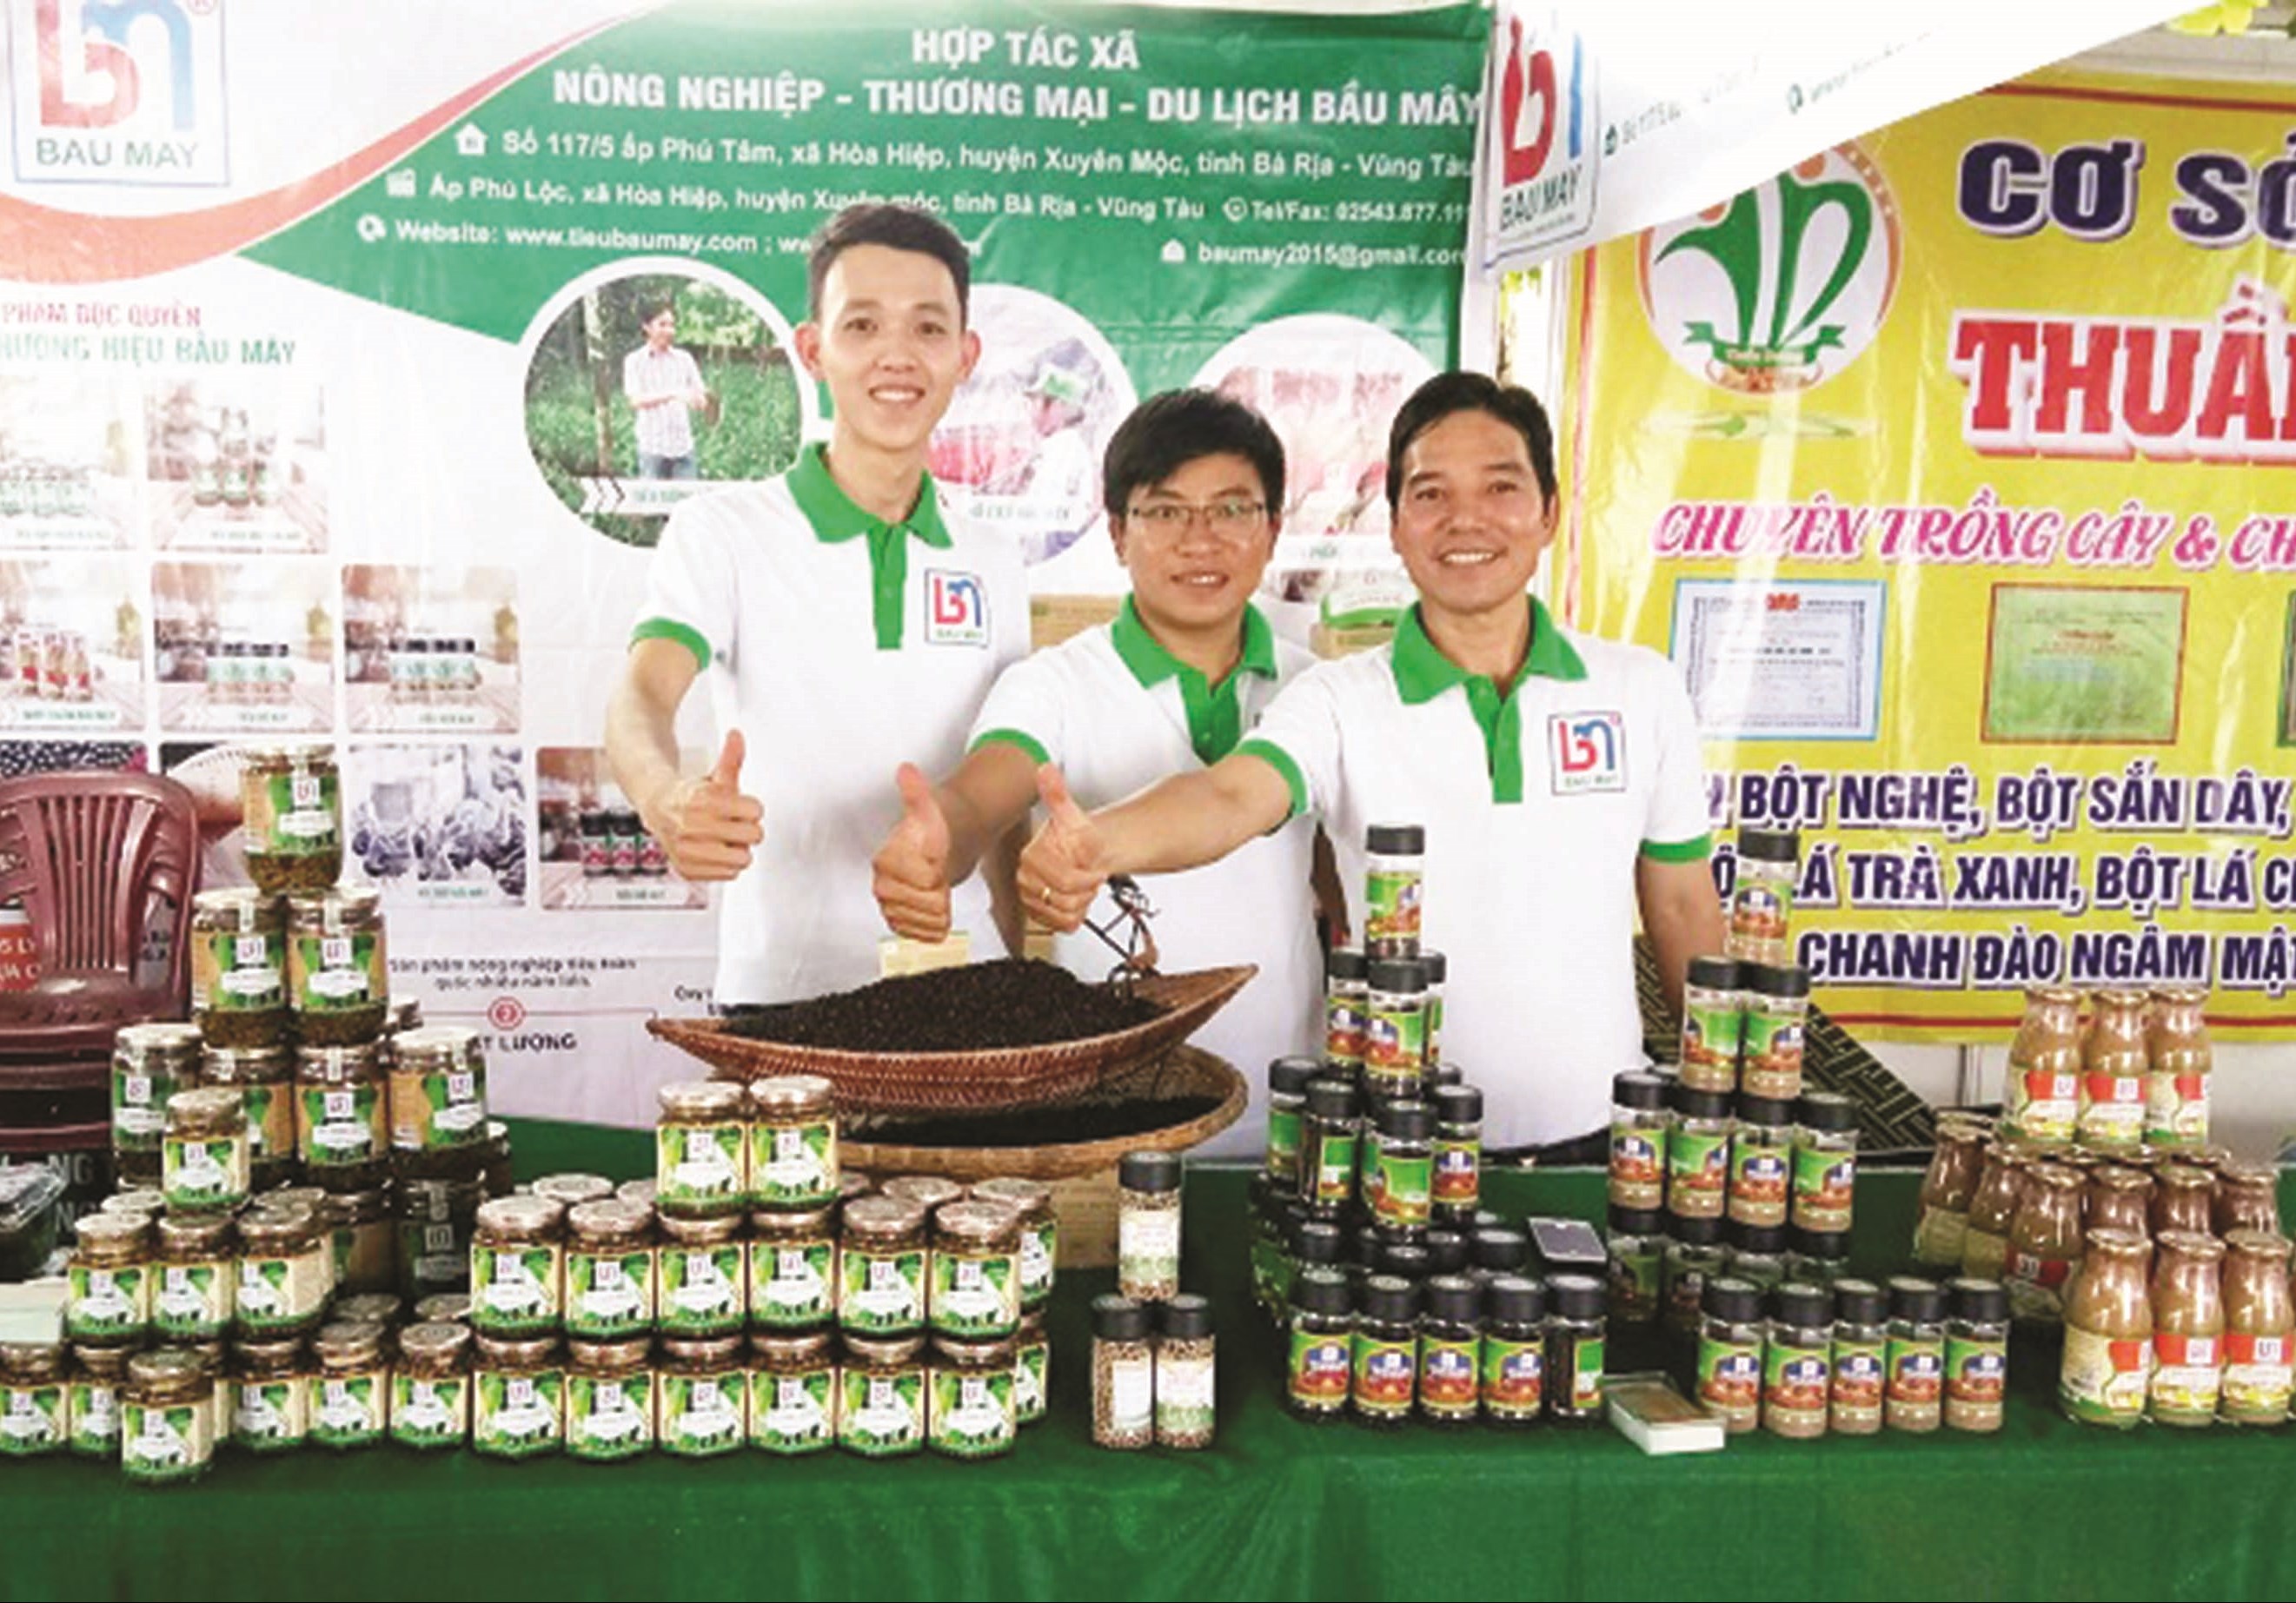 Anh Nhâm (ngoài cùng bên phải) luôn tích cực giới thiệu sản phẩm tiêu Bầu Mây tại các hội chợ xúc tiến thương mại, Festival nông nghiệp…